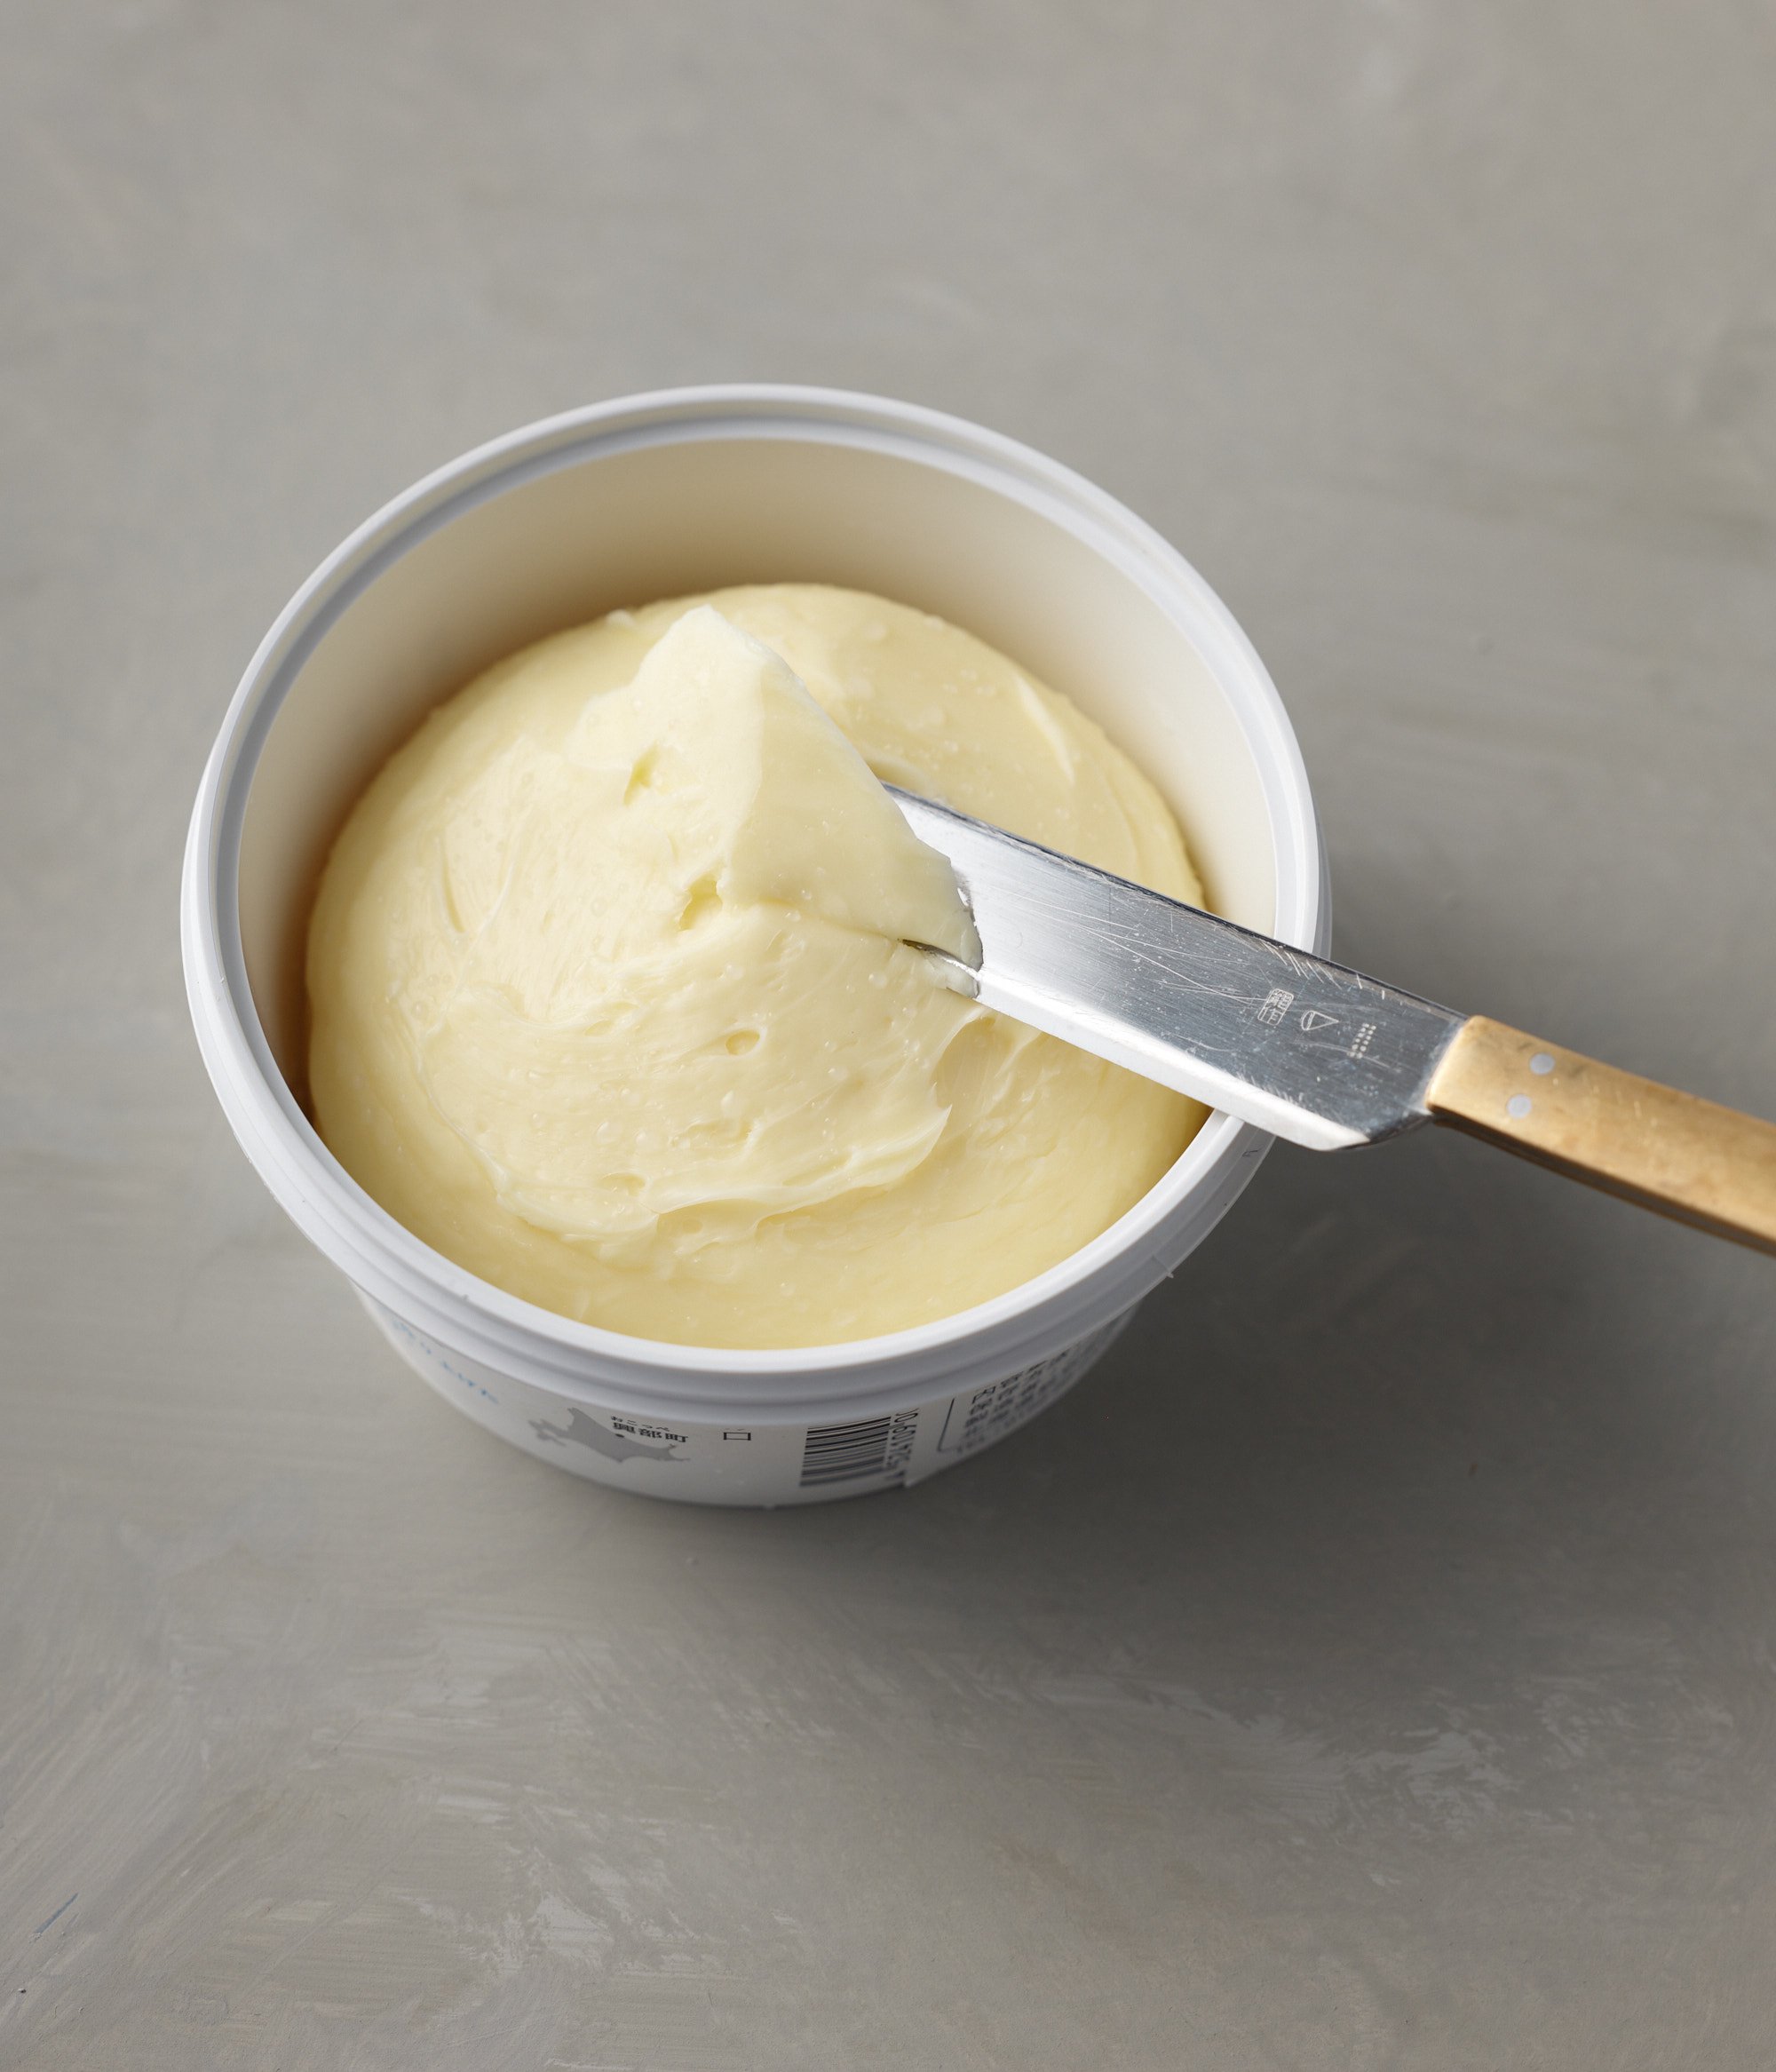  ノースプレインファーム オホーツクおこっぺ醗酵バター